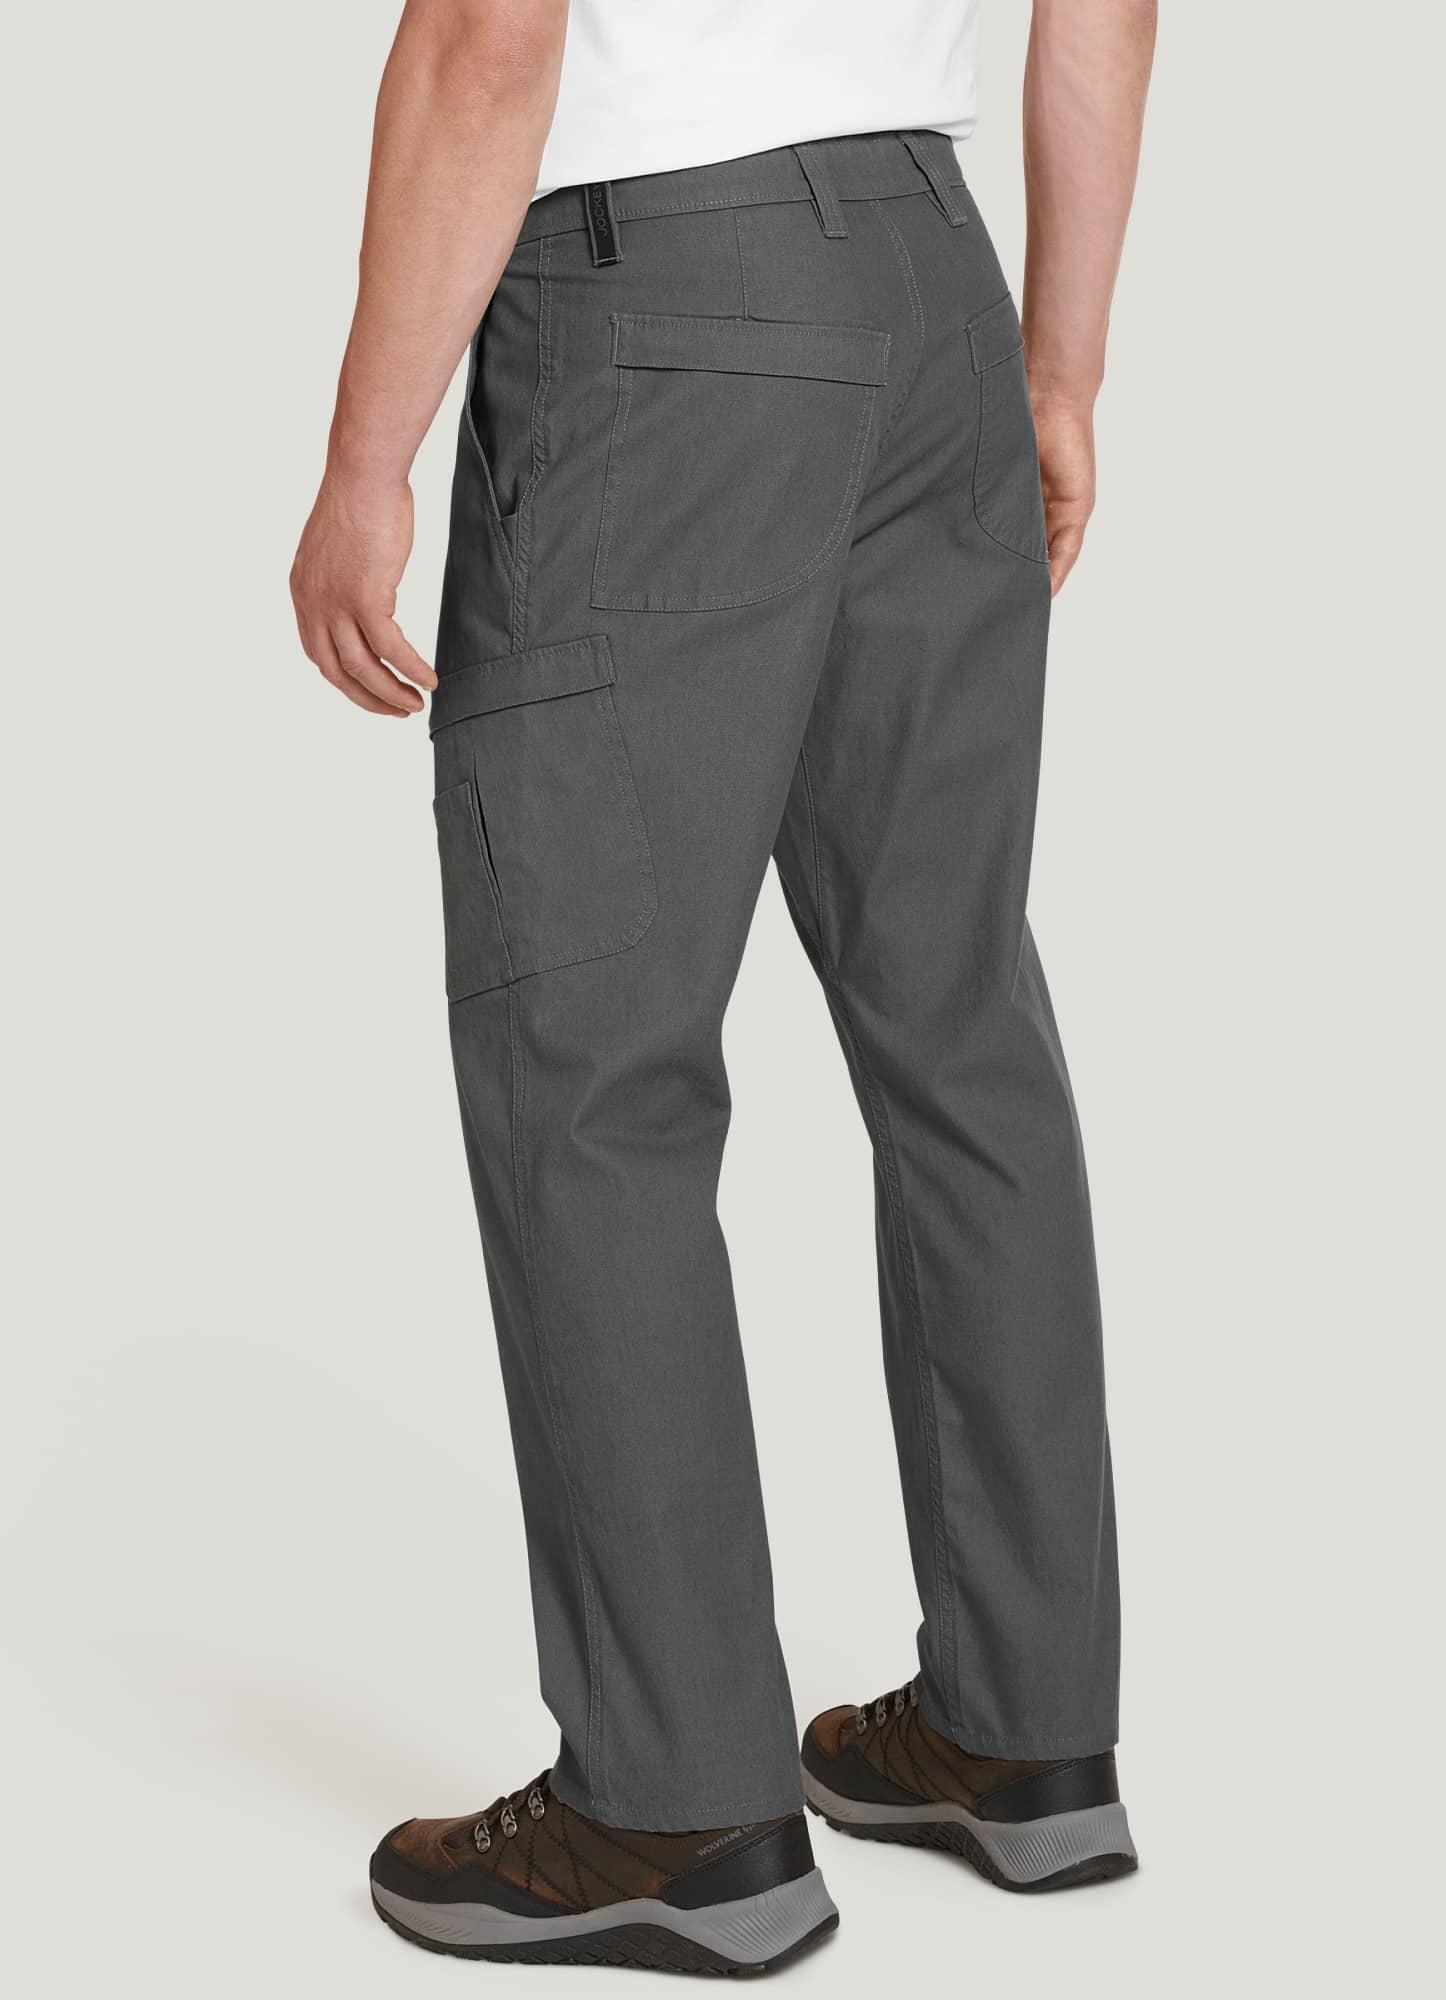 Jockey Outdoors™ Cargo Pant  Cargo pant, Bottom clothes, Jockey